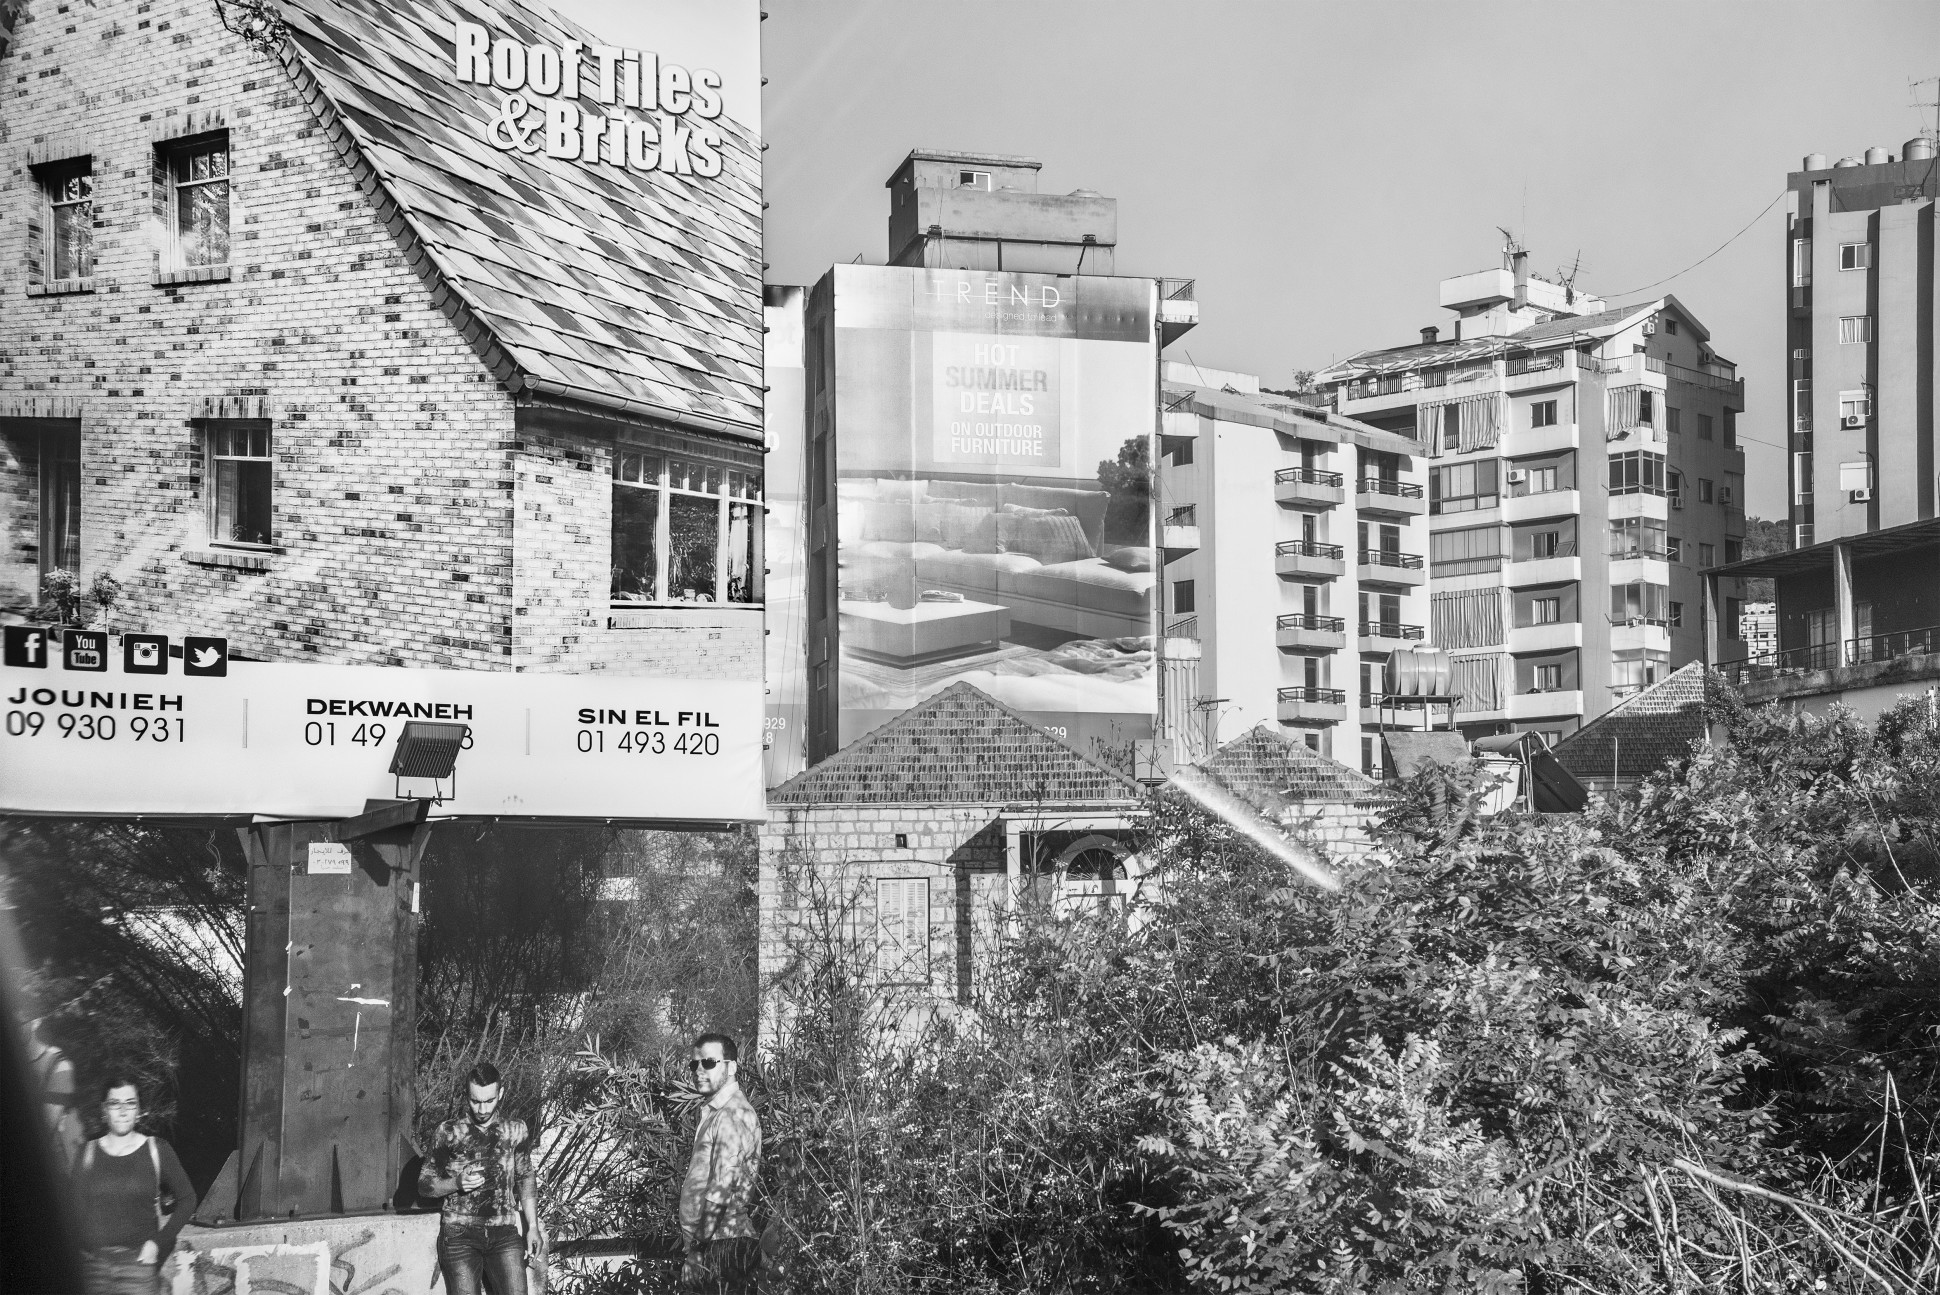 Roof Tiles/Bus Stop. Beirut, Lebanon, 2017 Archival fiber inkjet print in artist frame 41 x 61 cm. / 16 x 24 in. (unframed dims) Edition 1 of 3 + AP